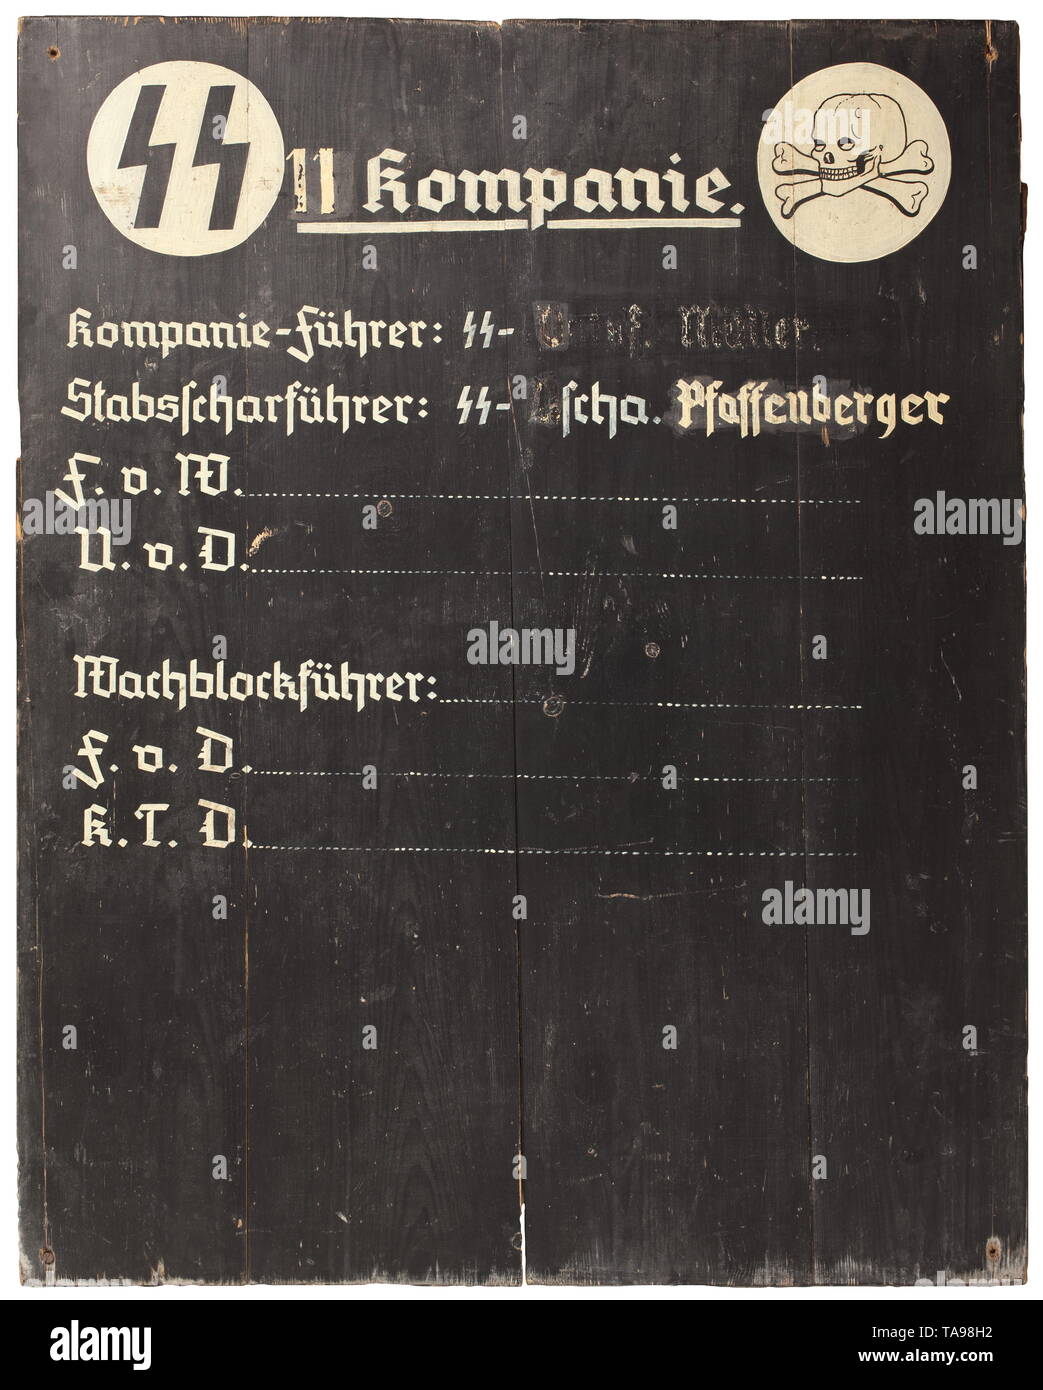 Ein SS-duty Board eines 11 Unternehmen Fachwerk aus vier Holzbohlen, Vorderseite schwarz lackiert, mit SS-Runen und Schädel auf weißen Platten, zwischen '11. Kompanie", darunter "Kompanie-Führer: SS-Ostuf Müller-Stabsscharführer: SS-u.Scha. Pfaffenberger' (teilweise verschmiert Buchstaben), wechselnde Aufgaben "F.v.W. - U.v.D. - Wachblockführer - F.v.D. - K.T.D.' mit Leerzeilen. Rückseite lackiert Feld - grau und mit Kreide taktischen Zeichnungen. In den Ecken sehr abgenutzt Befestigungsbohrungen. Abmessungen 120.5 x 96.85 cm. Extrem selten. Die einfache, aber solide Verarbeitung impliziert die mobile Nutzung o, Editorial-Use - Nur Stockfoto